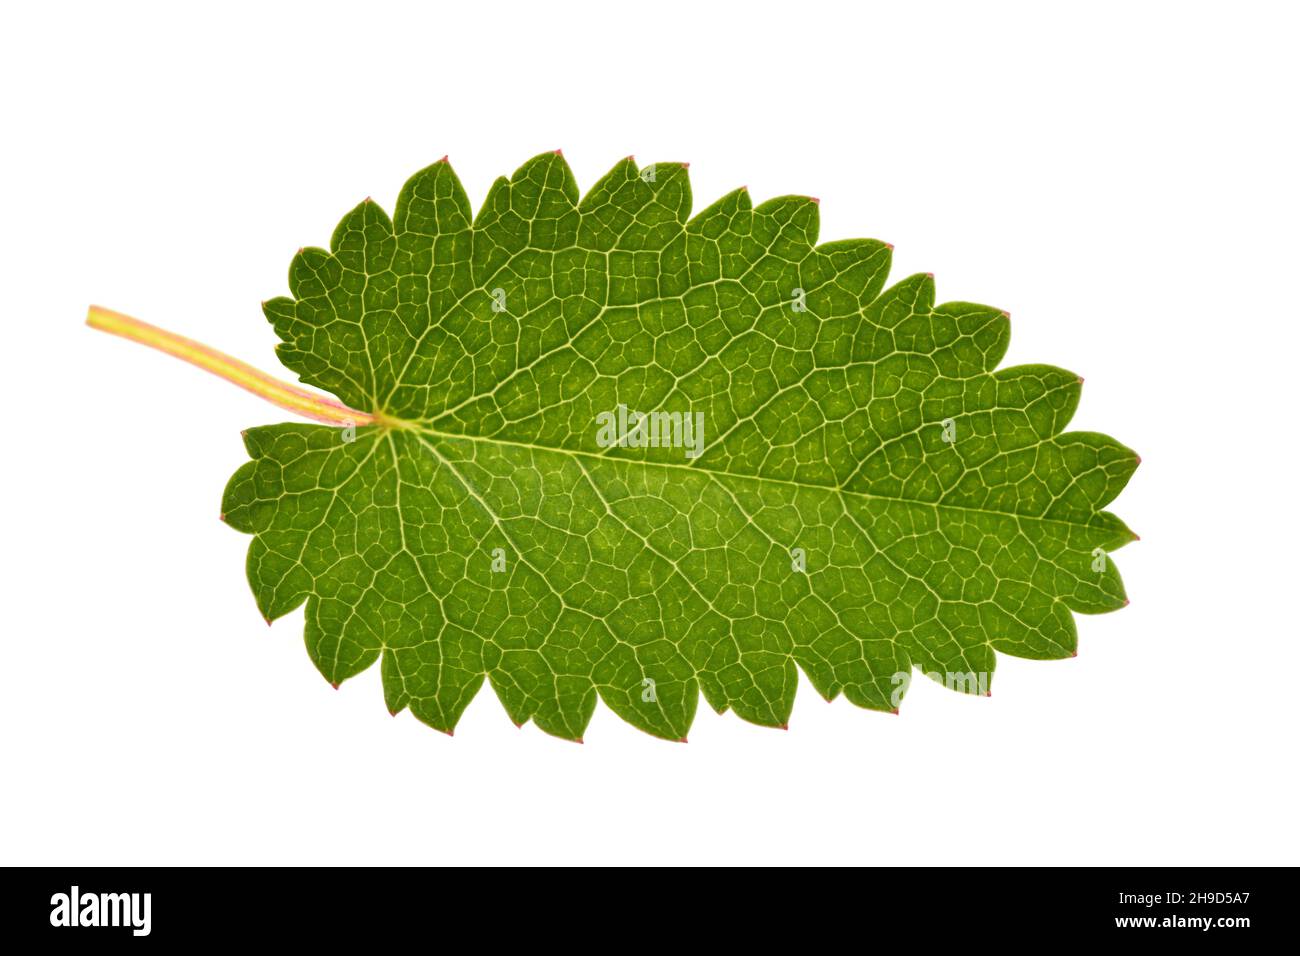 Great Burnet leaf isolated on white background Stock Photo